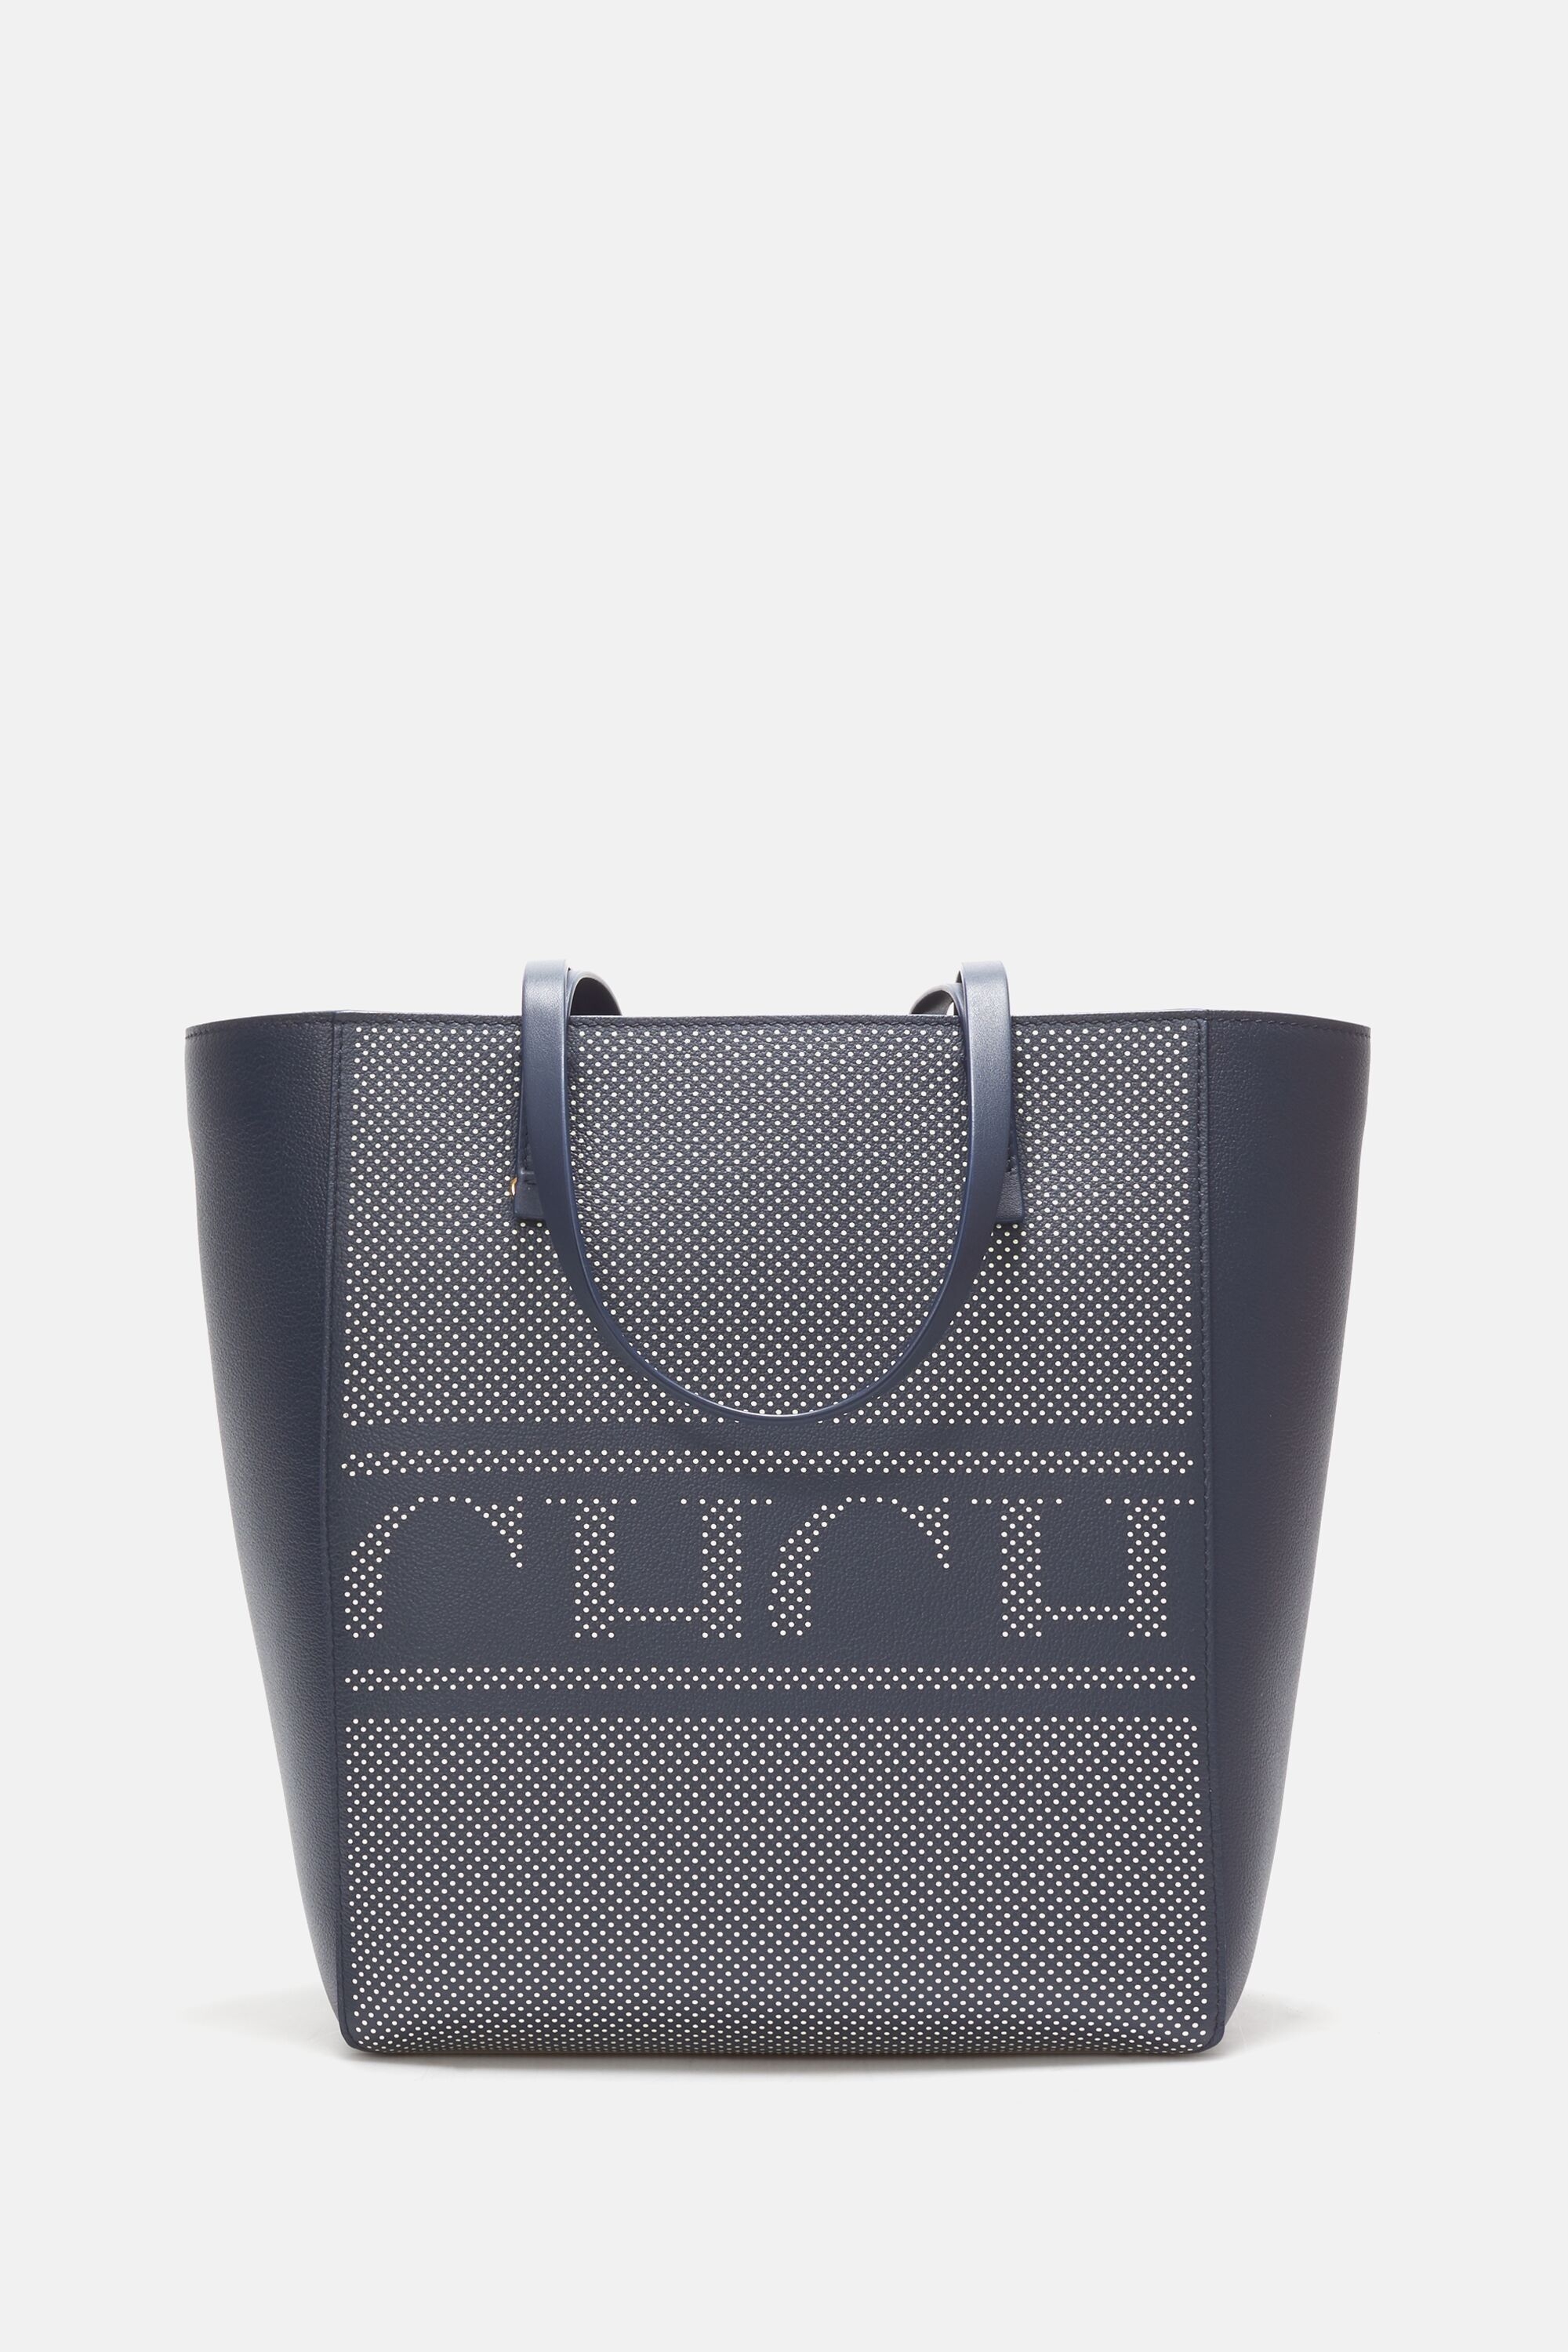 Editors Tote | Medium shoulder bag